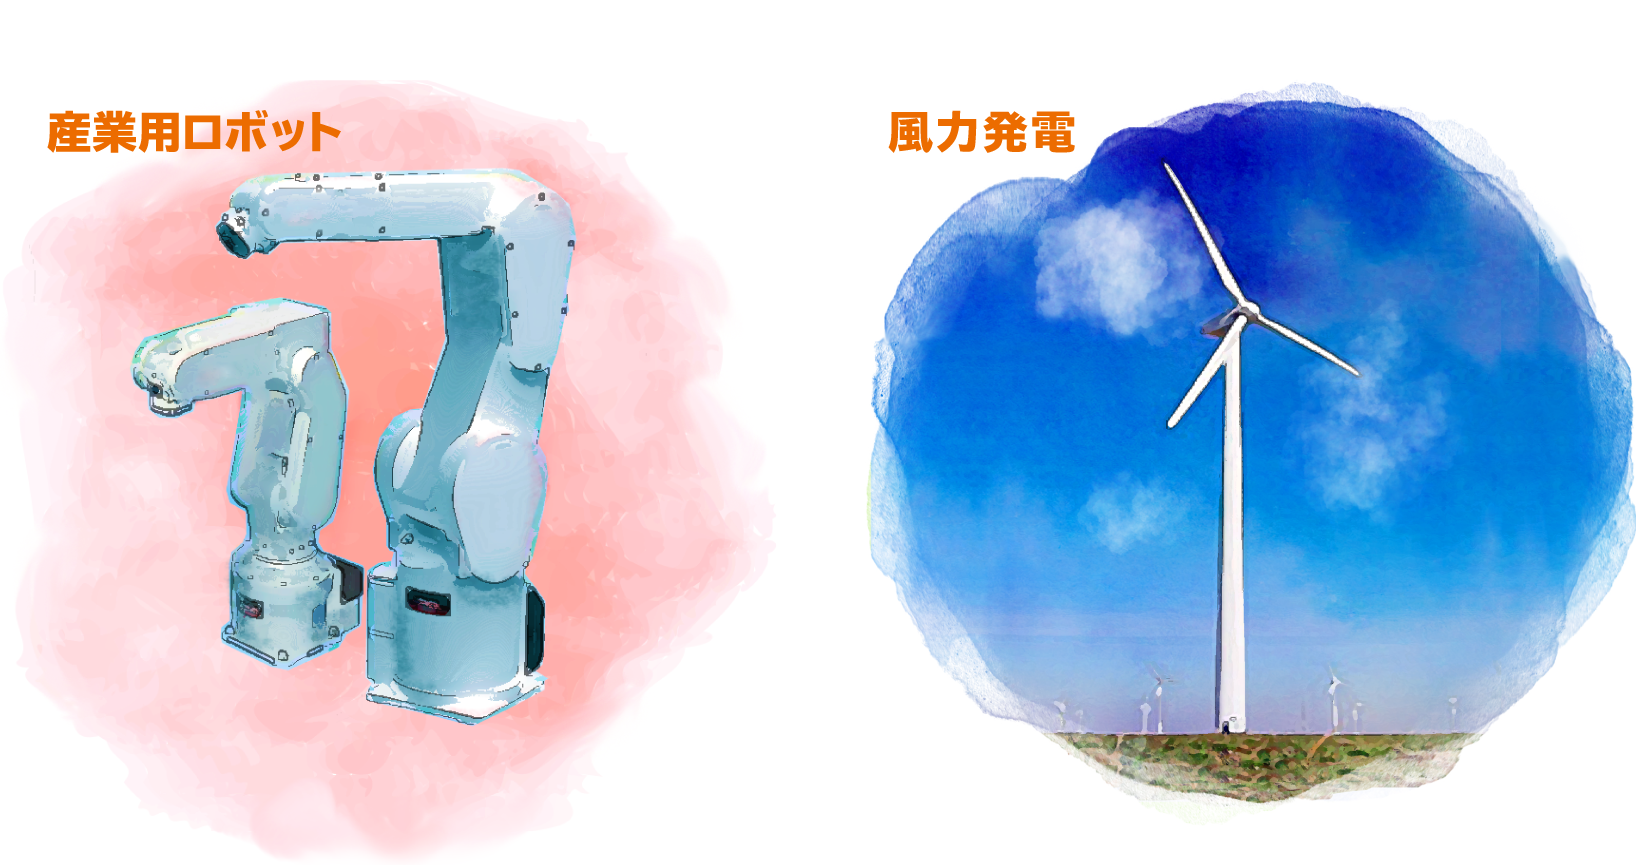 産業用ロボット・風力発電